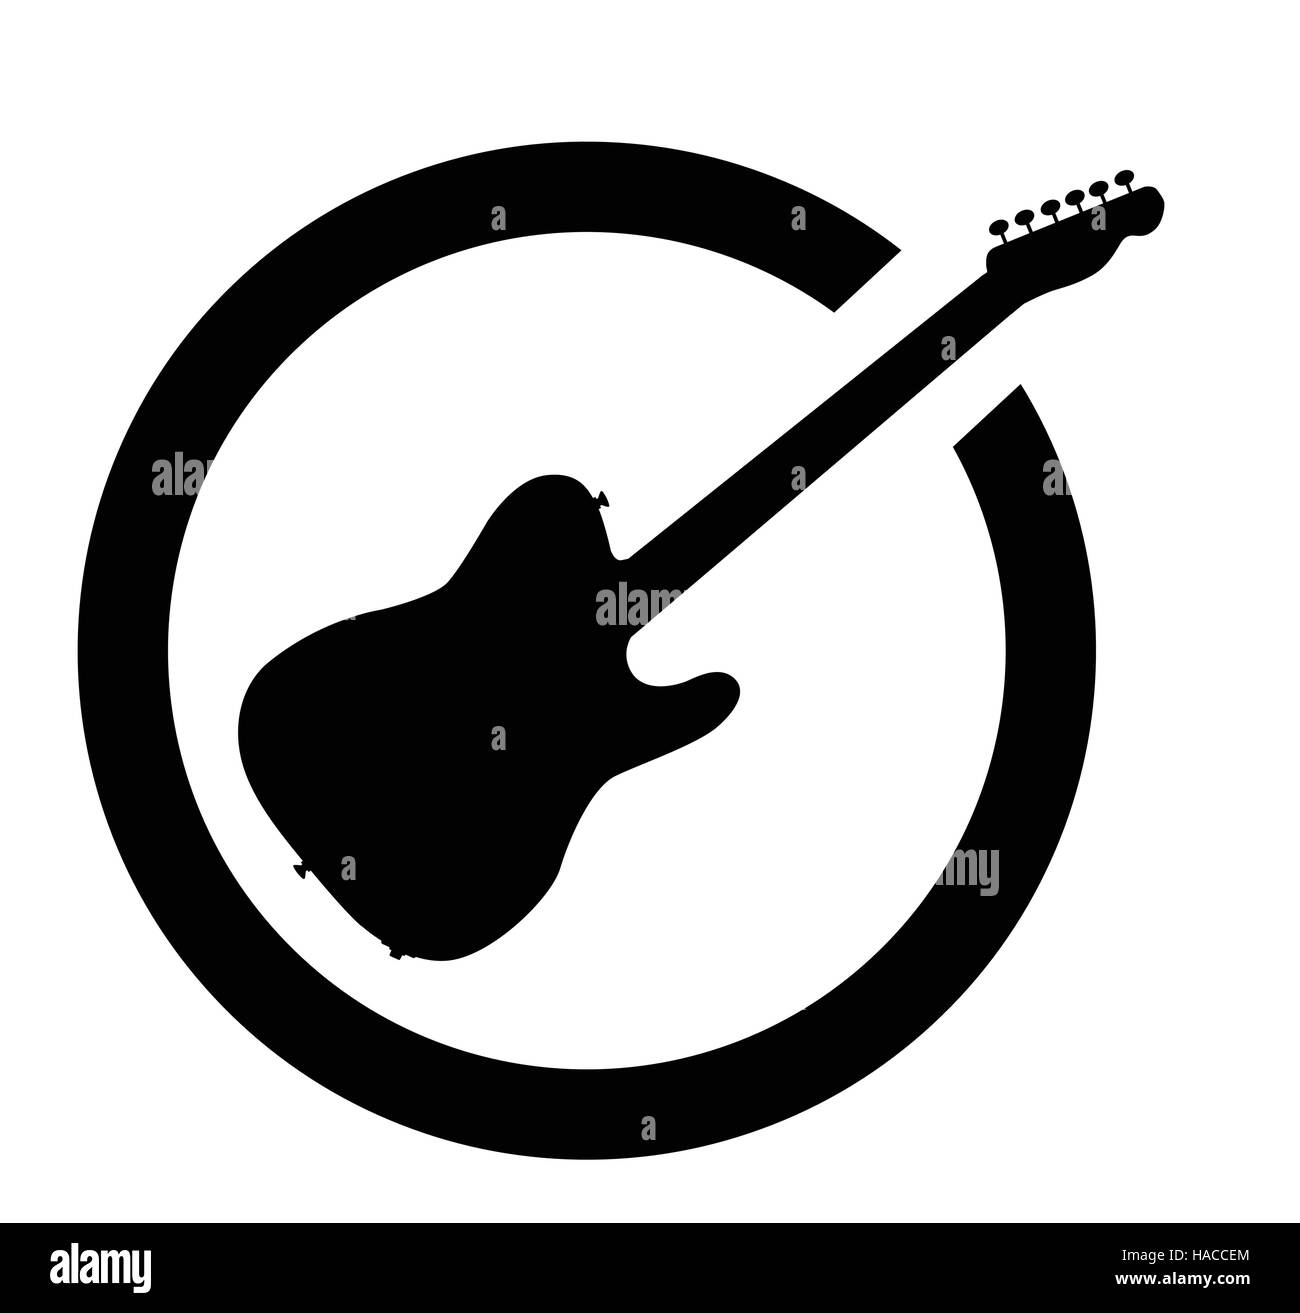 Die standard Rock And Roll-Gitarre isoliert als Tinte Stempel in schwarz auf einem weißen Hintergrund. Stock Vektor